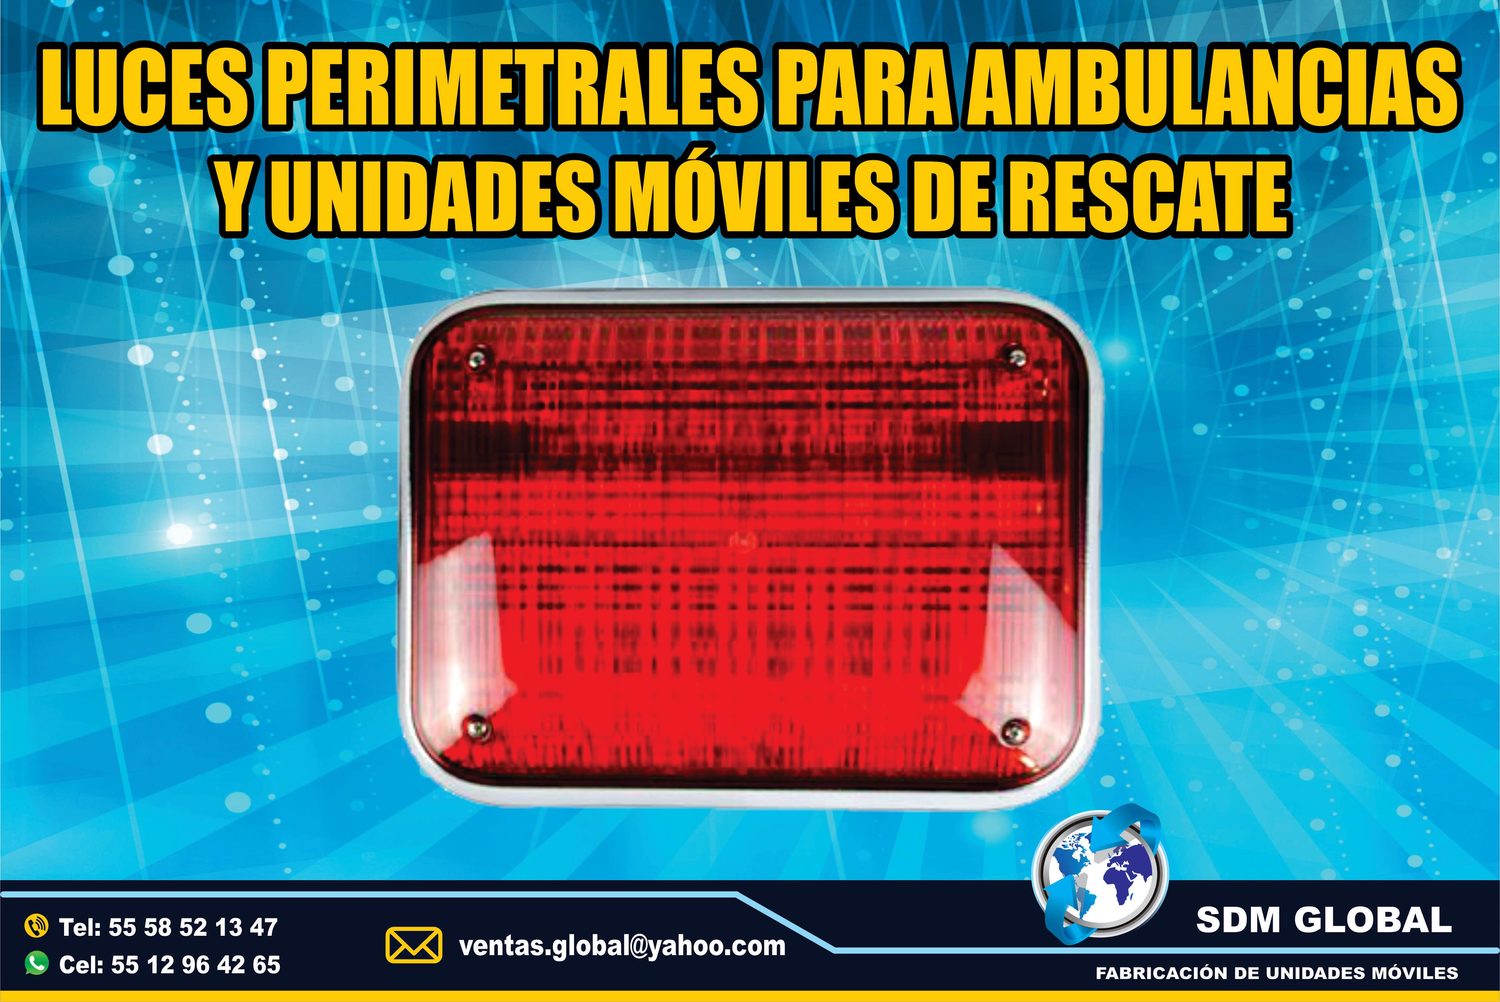 <span style="font-weight: bold;">Venta de Luces Perimetrales para Ambulancias de Traslado Tipo I, II </span><br>